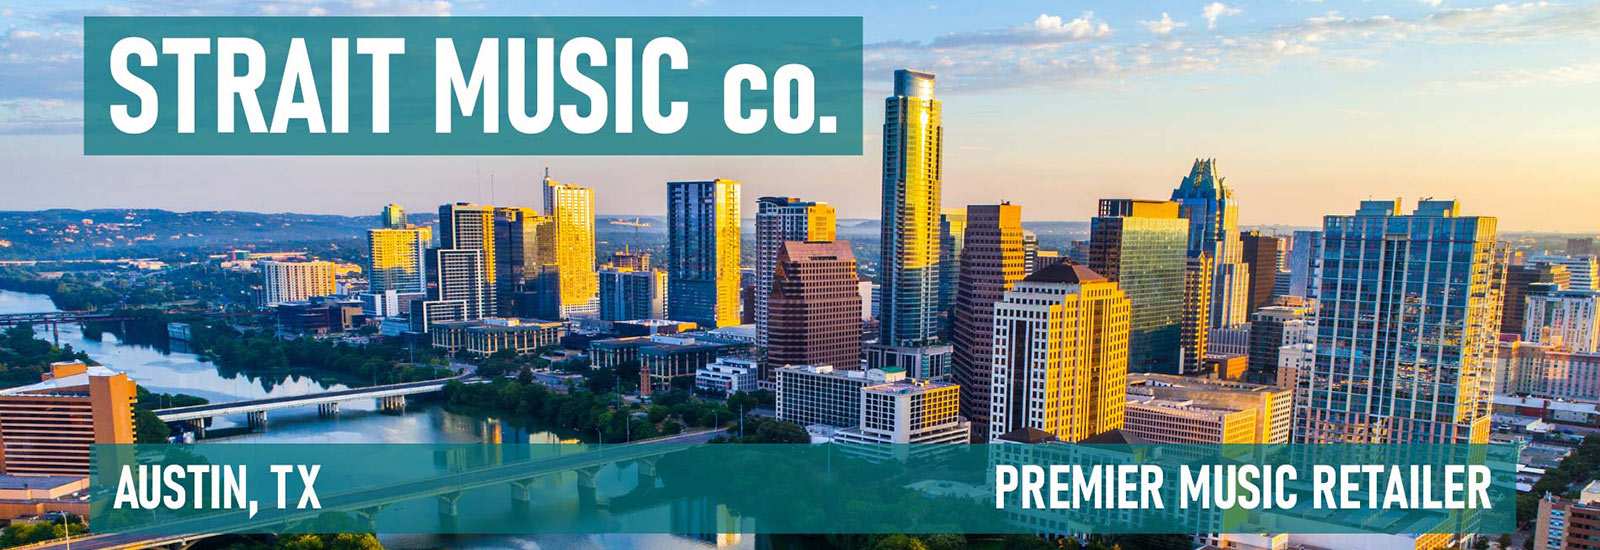 Strait Music Austin TX Premier Music Retailer